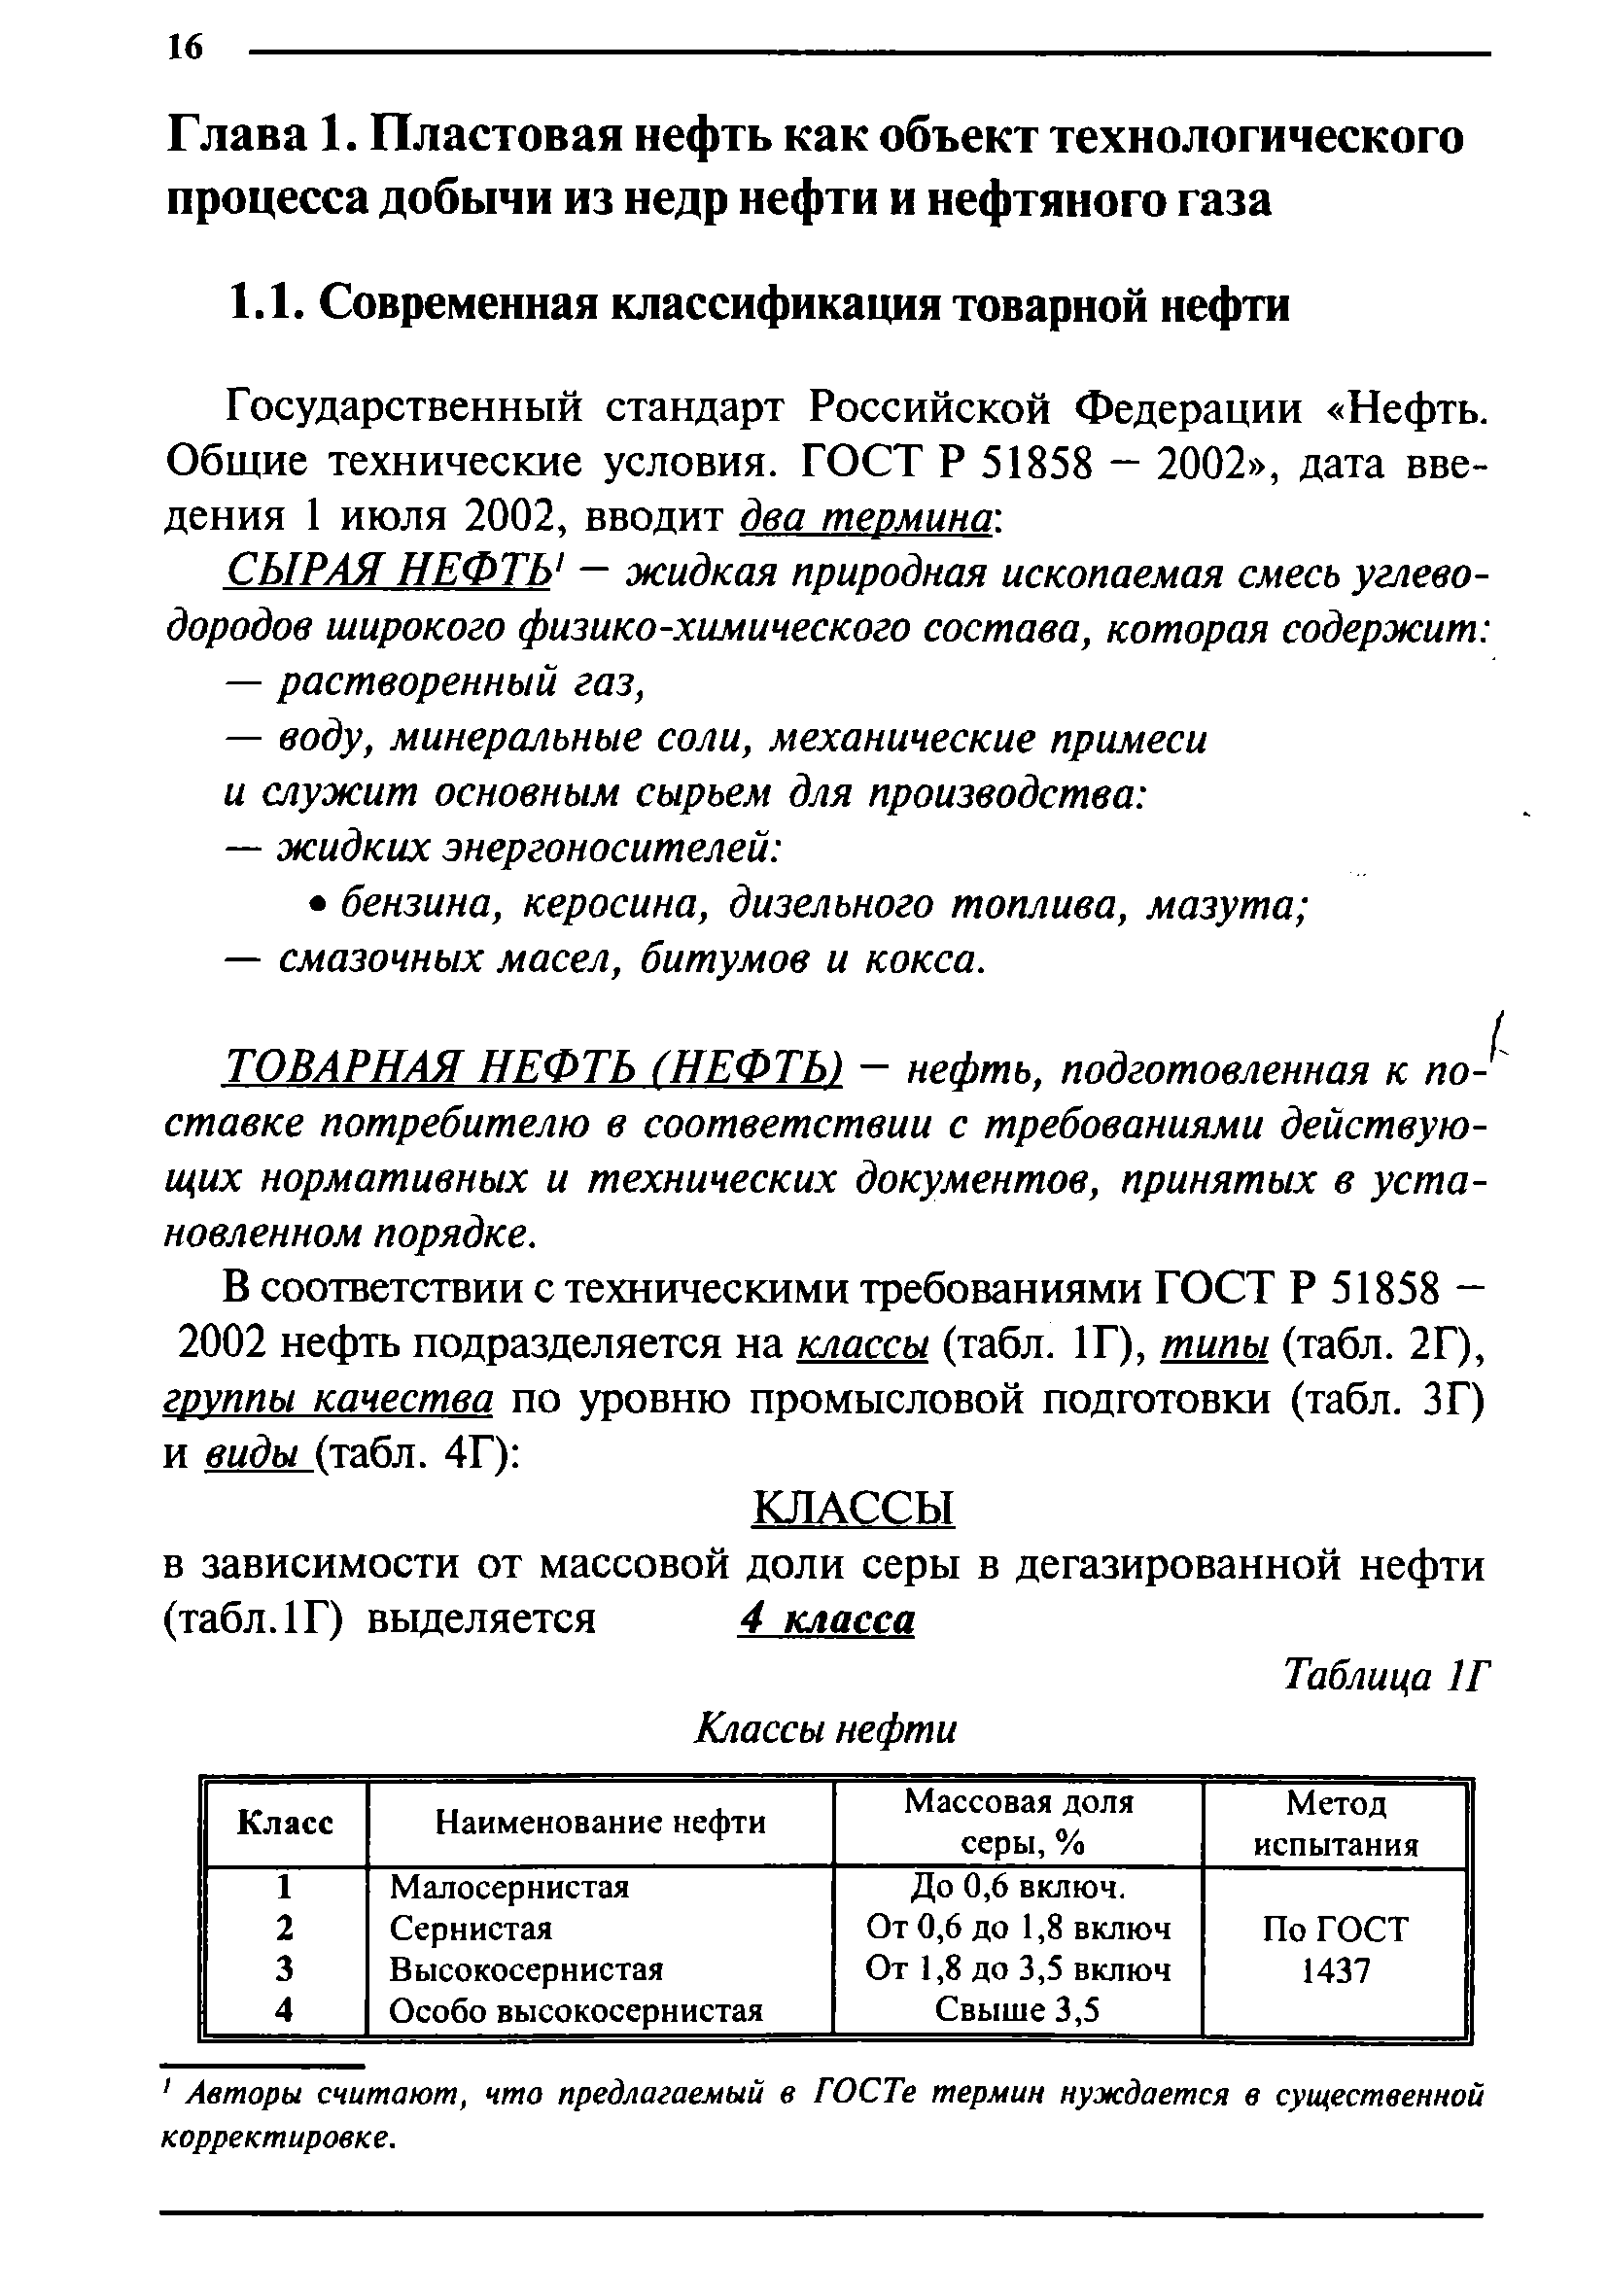 Государственный стандарт Российской Федерации Нефть. Общие технические условия. ГОСТ Р 51858 — 2002 , дата введения 1 июля 2002, вводит два термина-.